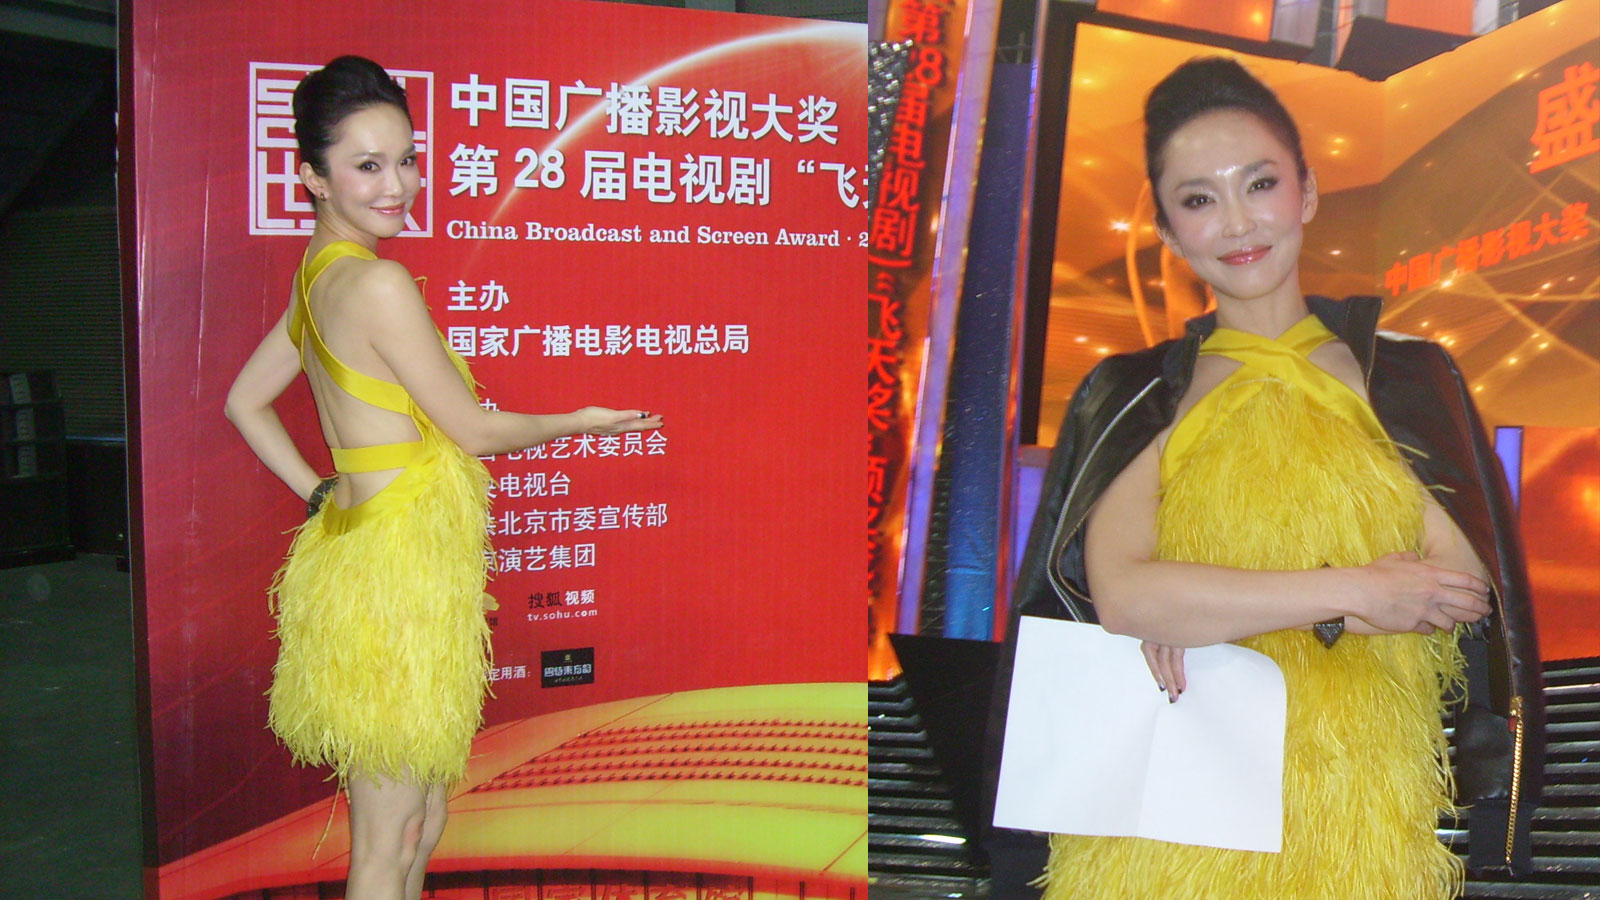 China TV Awards (2011)